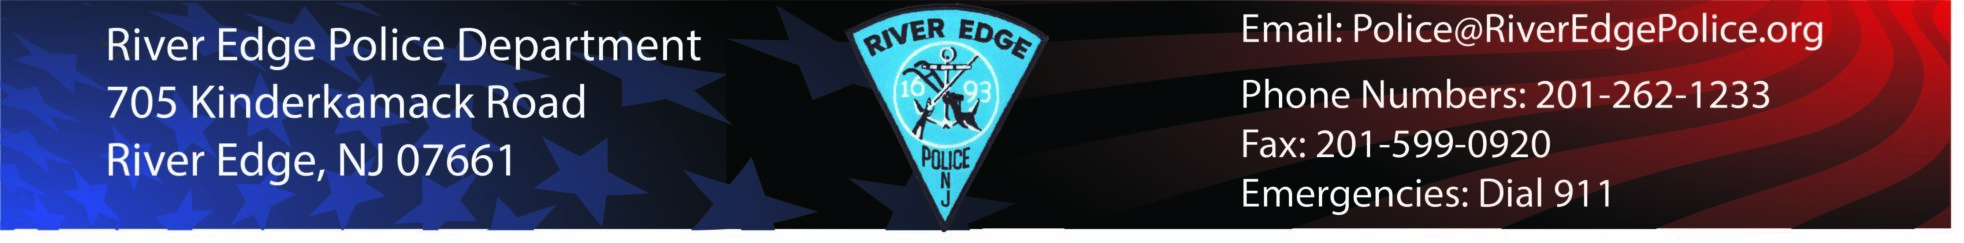 River Edge Police